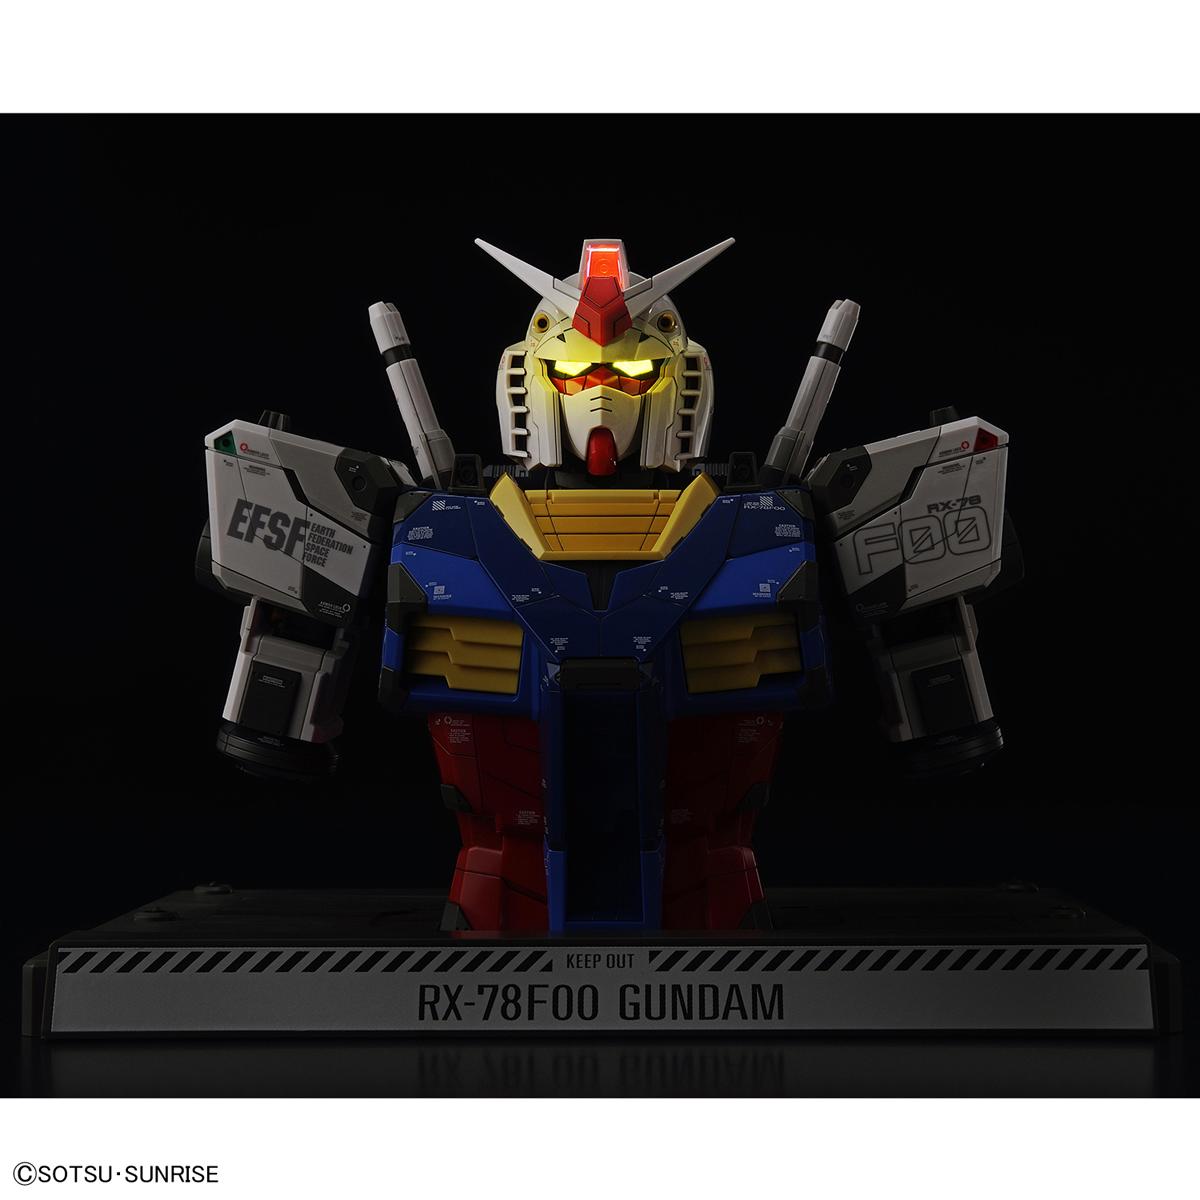 1/48 RX-78F00 Gundam [Bust Model]